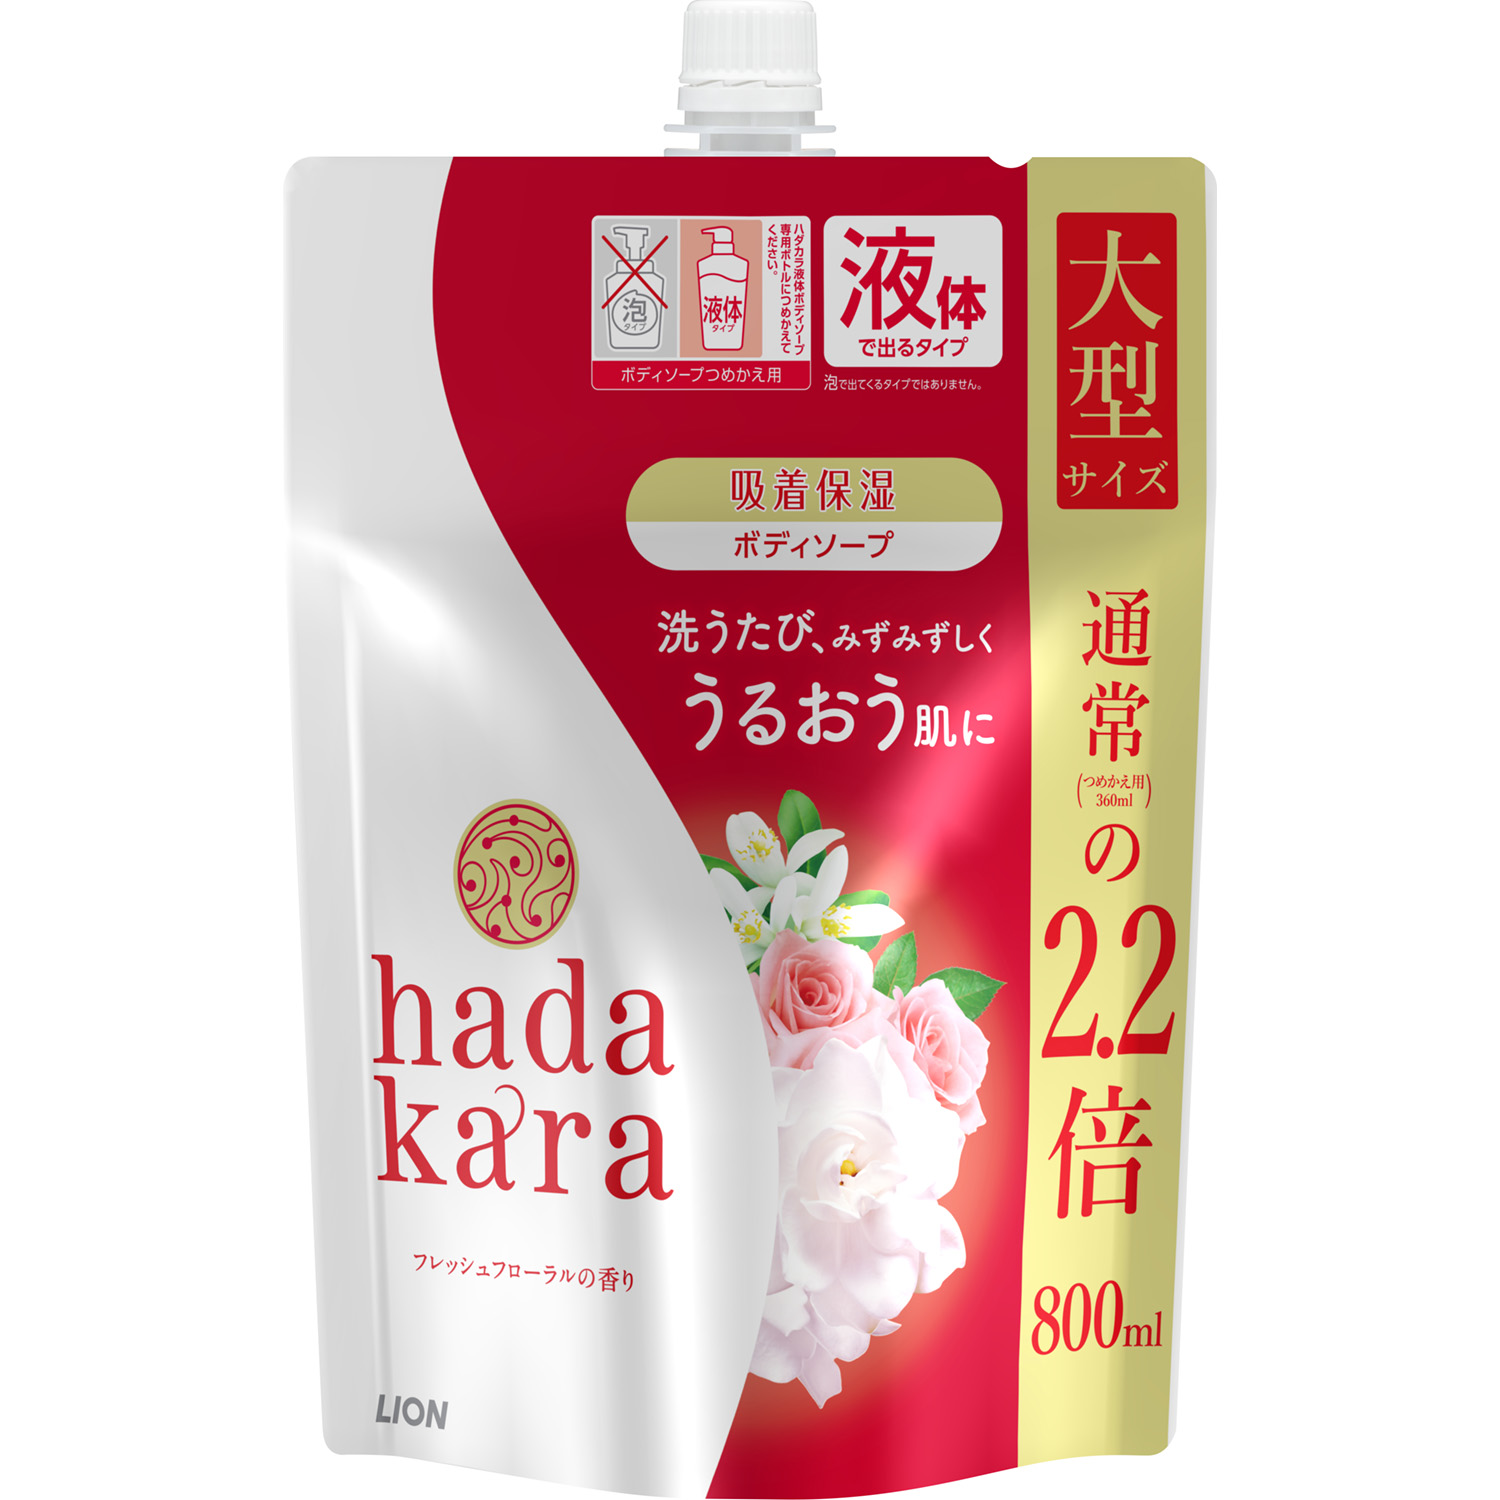 hadakara（ハダカラ）ボディソープ フレッシュフローラルの香り 詰替え用 大型サイズ 800ml